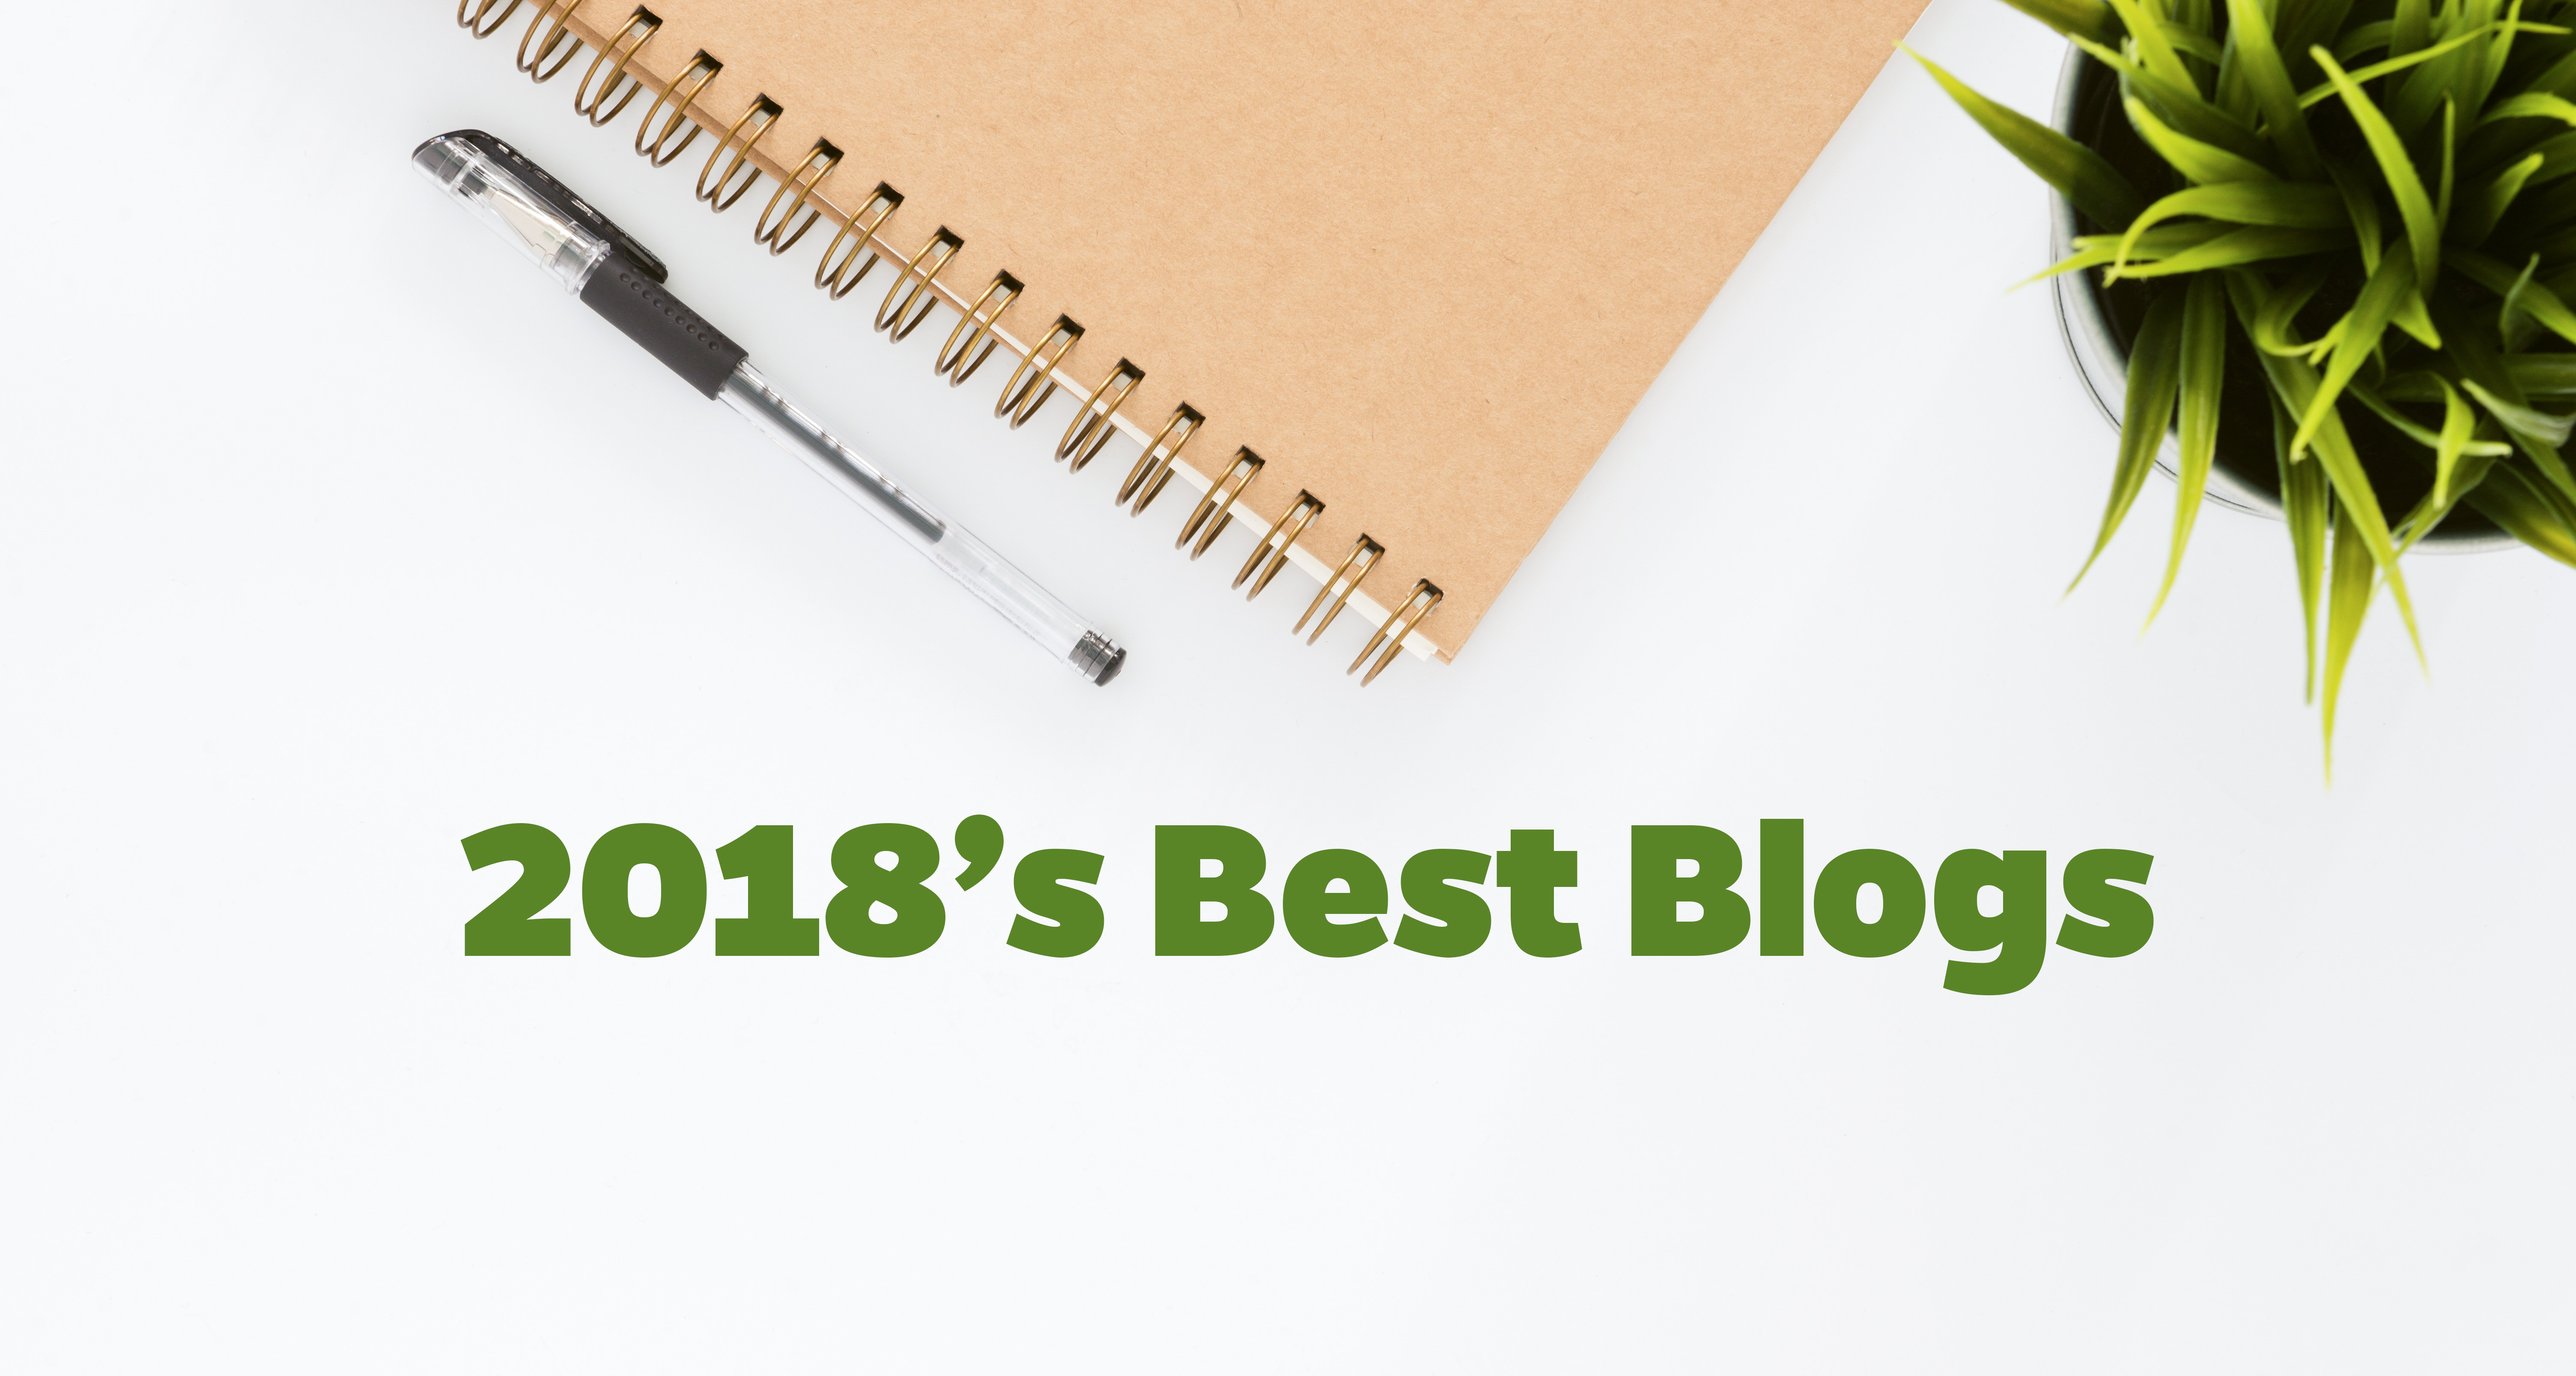 14 Best Blogs of 2018